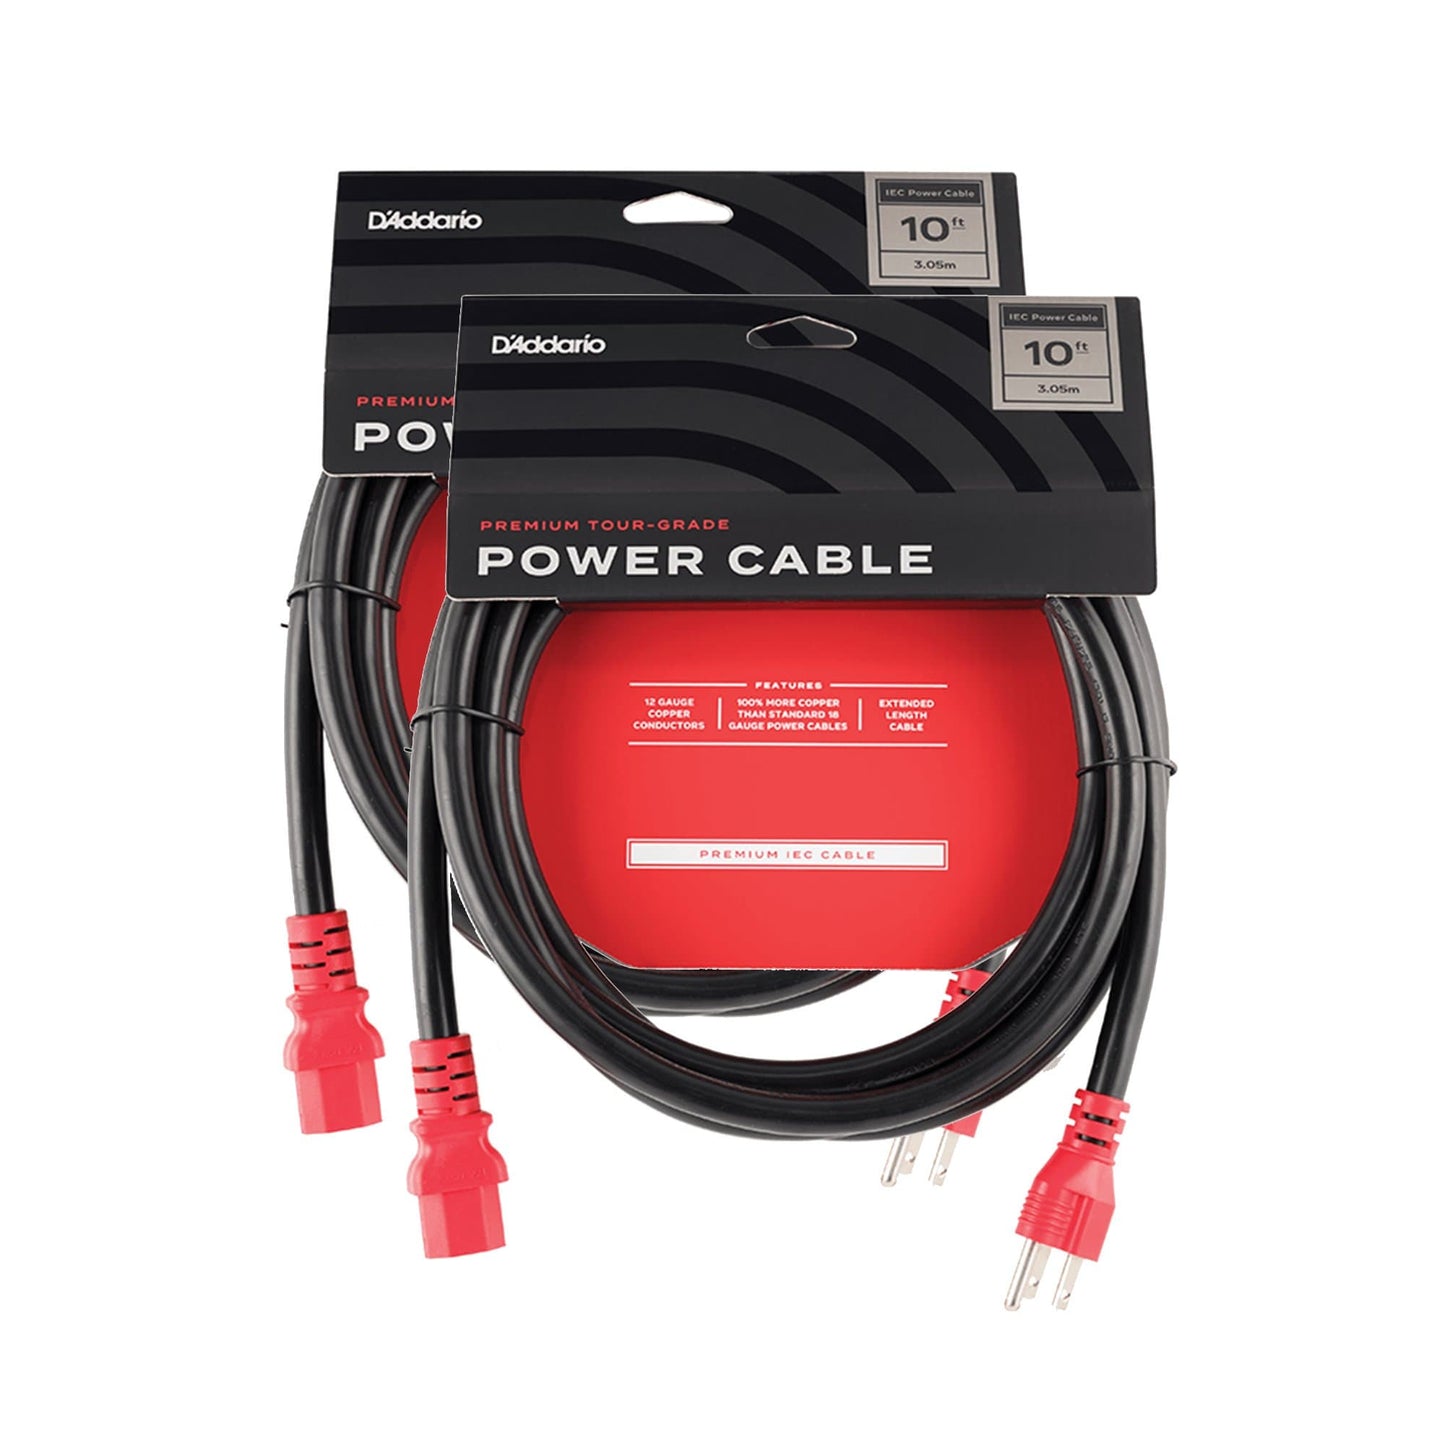 D'Addario IEC-NEMA Power Cable 10' 2 Pack Bundle Accessories / Cables